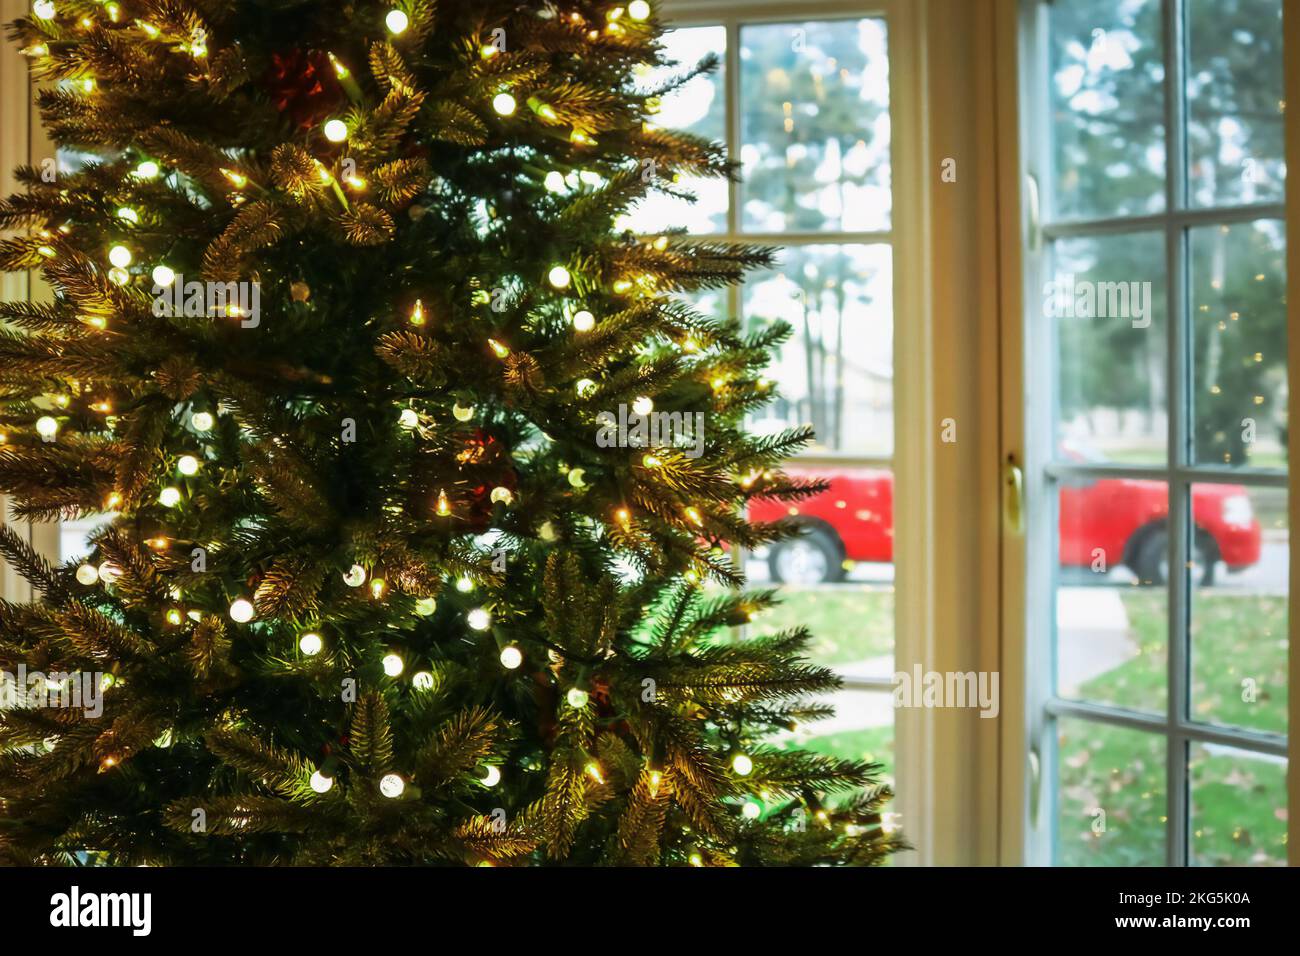 Noël dans le Sud - arbre de Noël avec des lumières devant une baie vitrée floue montrant de l'herbe verte et des arbres et un camion rouge Banque D'Images